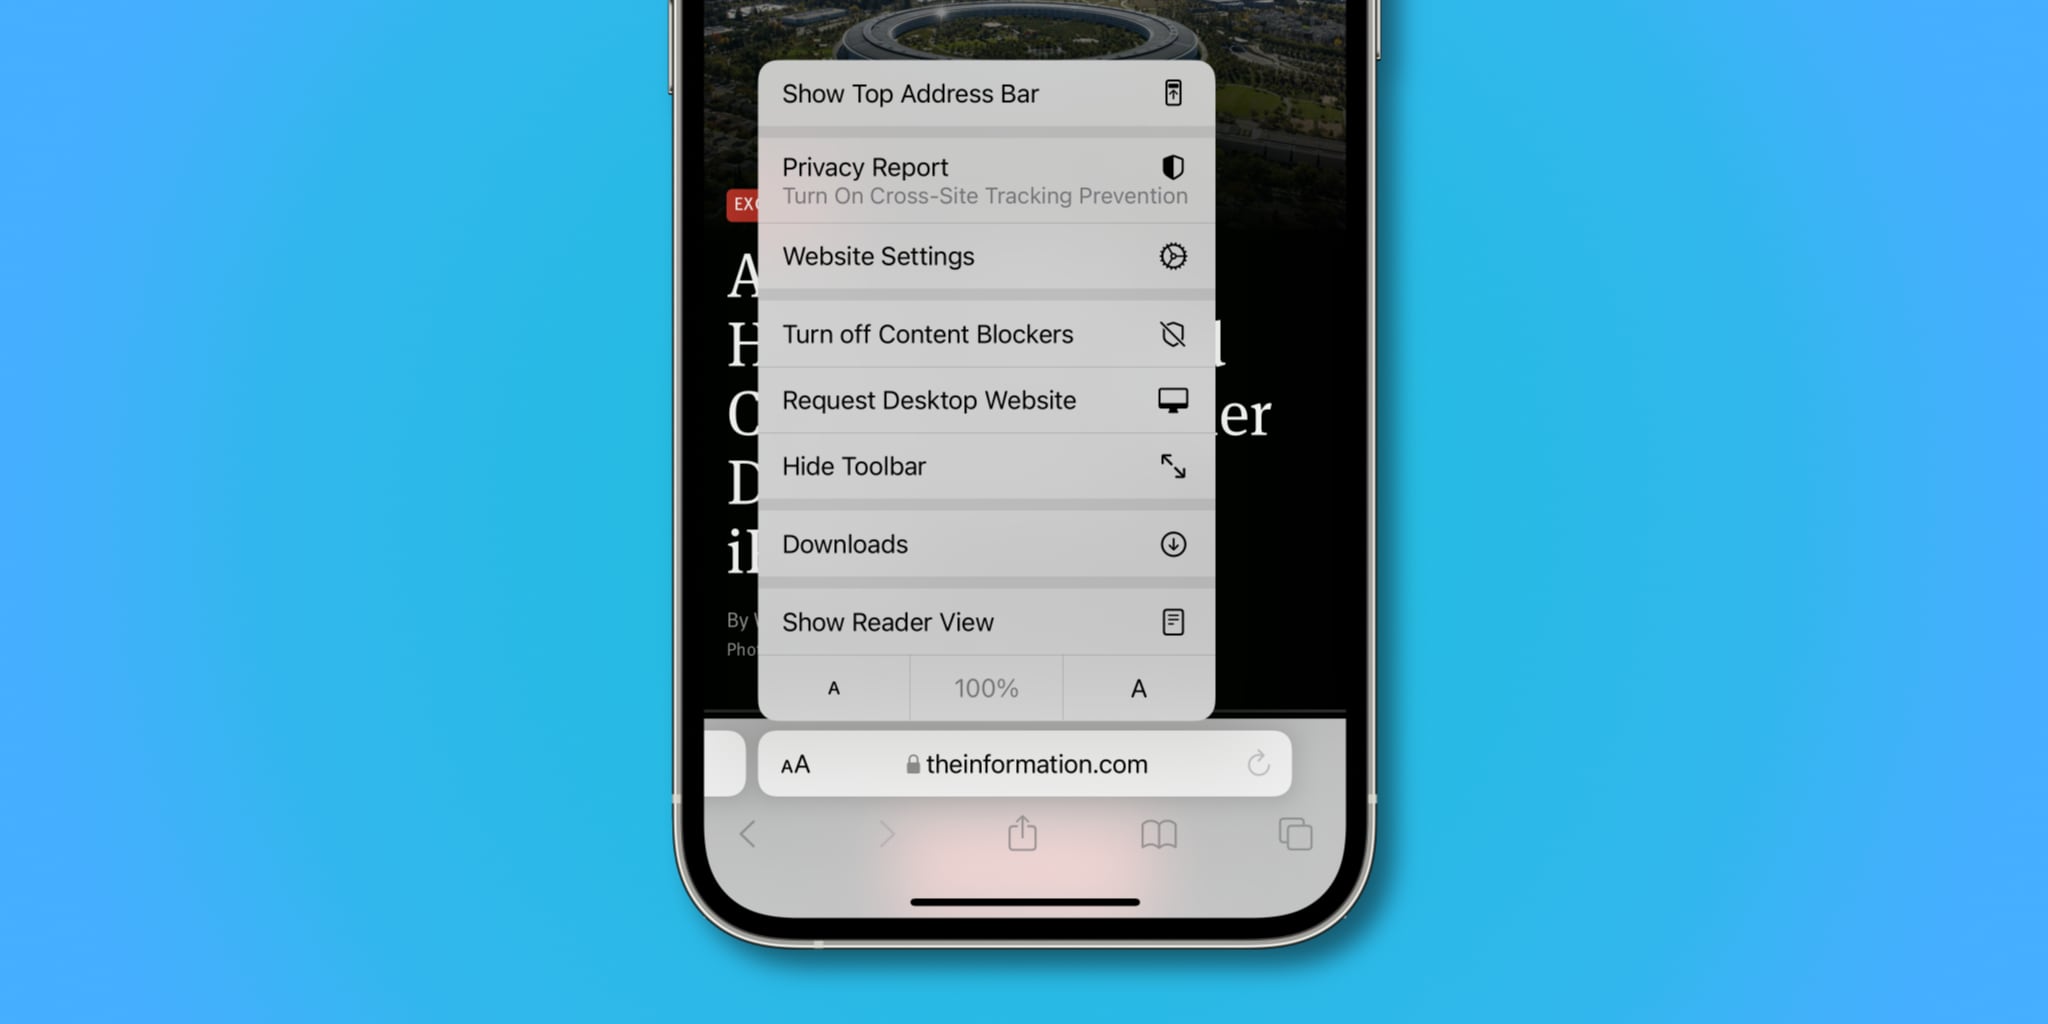 Capture d'écran de l'iPhone illustrant la barre d'adresse inférieure avec les options de menu « aA » dans Safari sur iOS 15